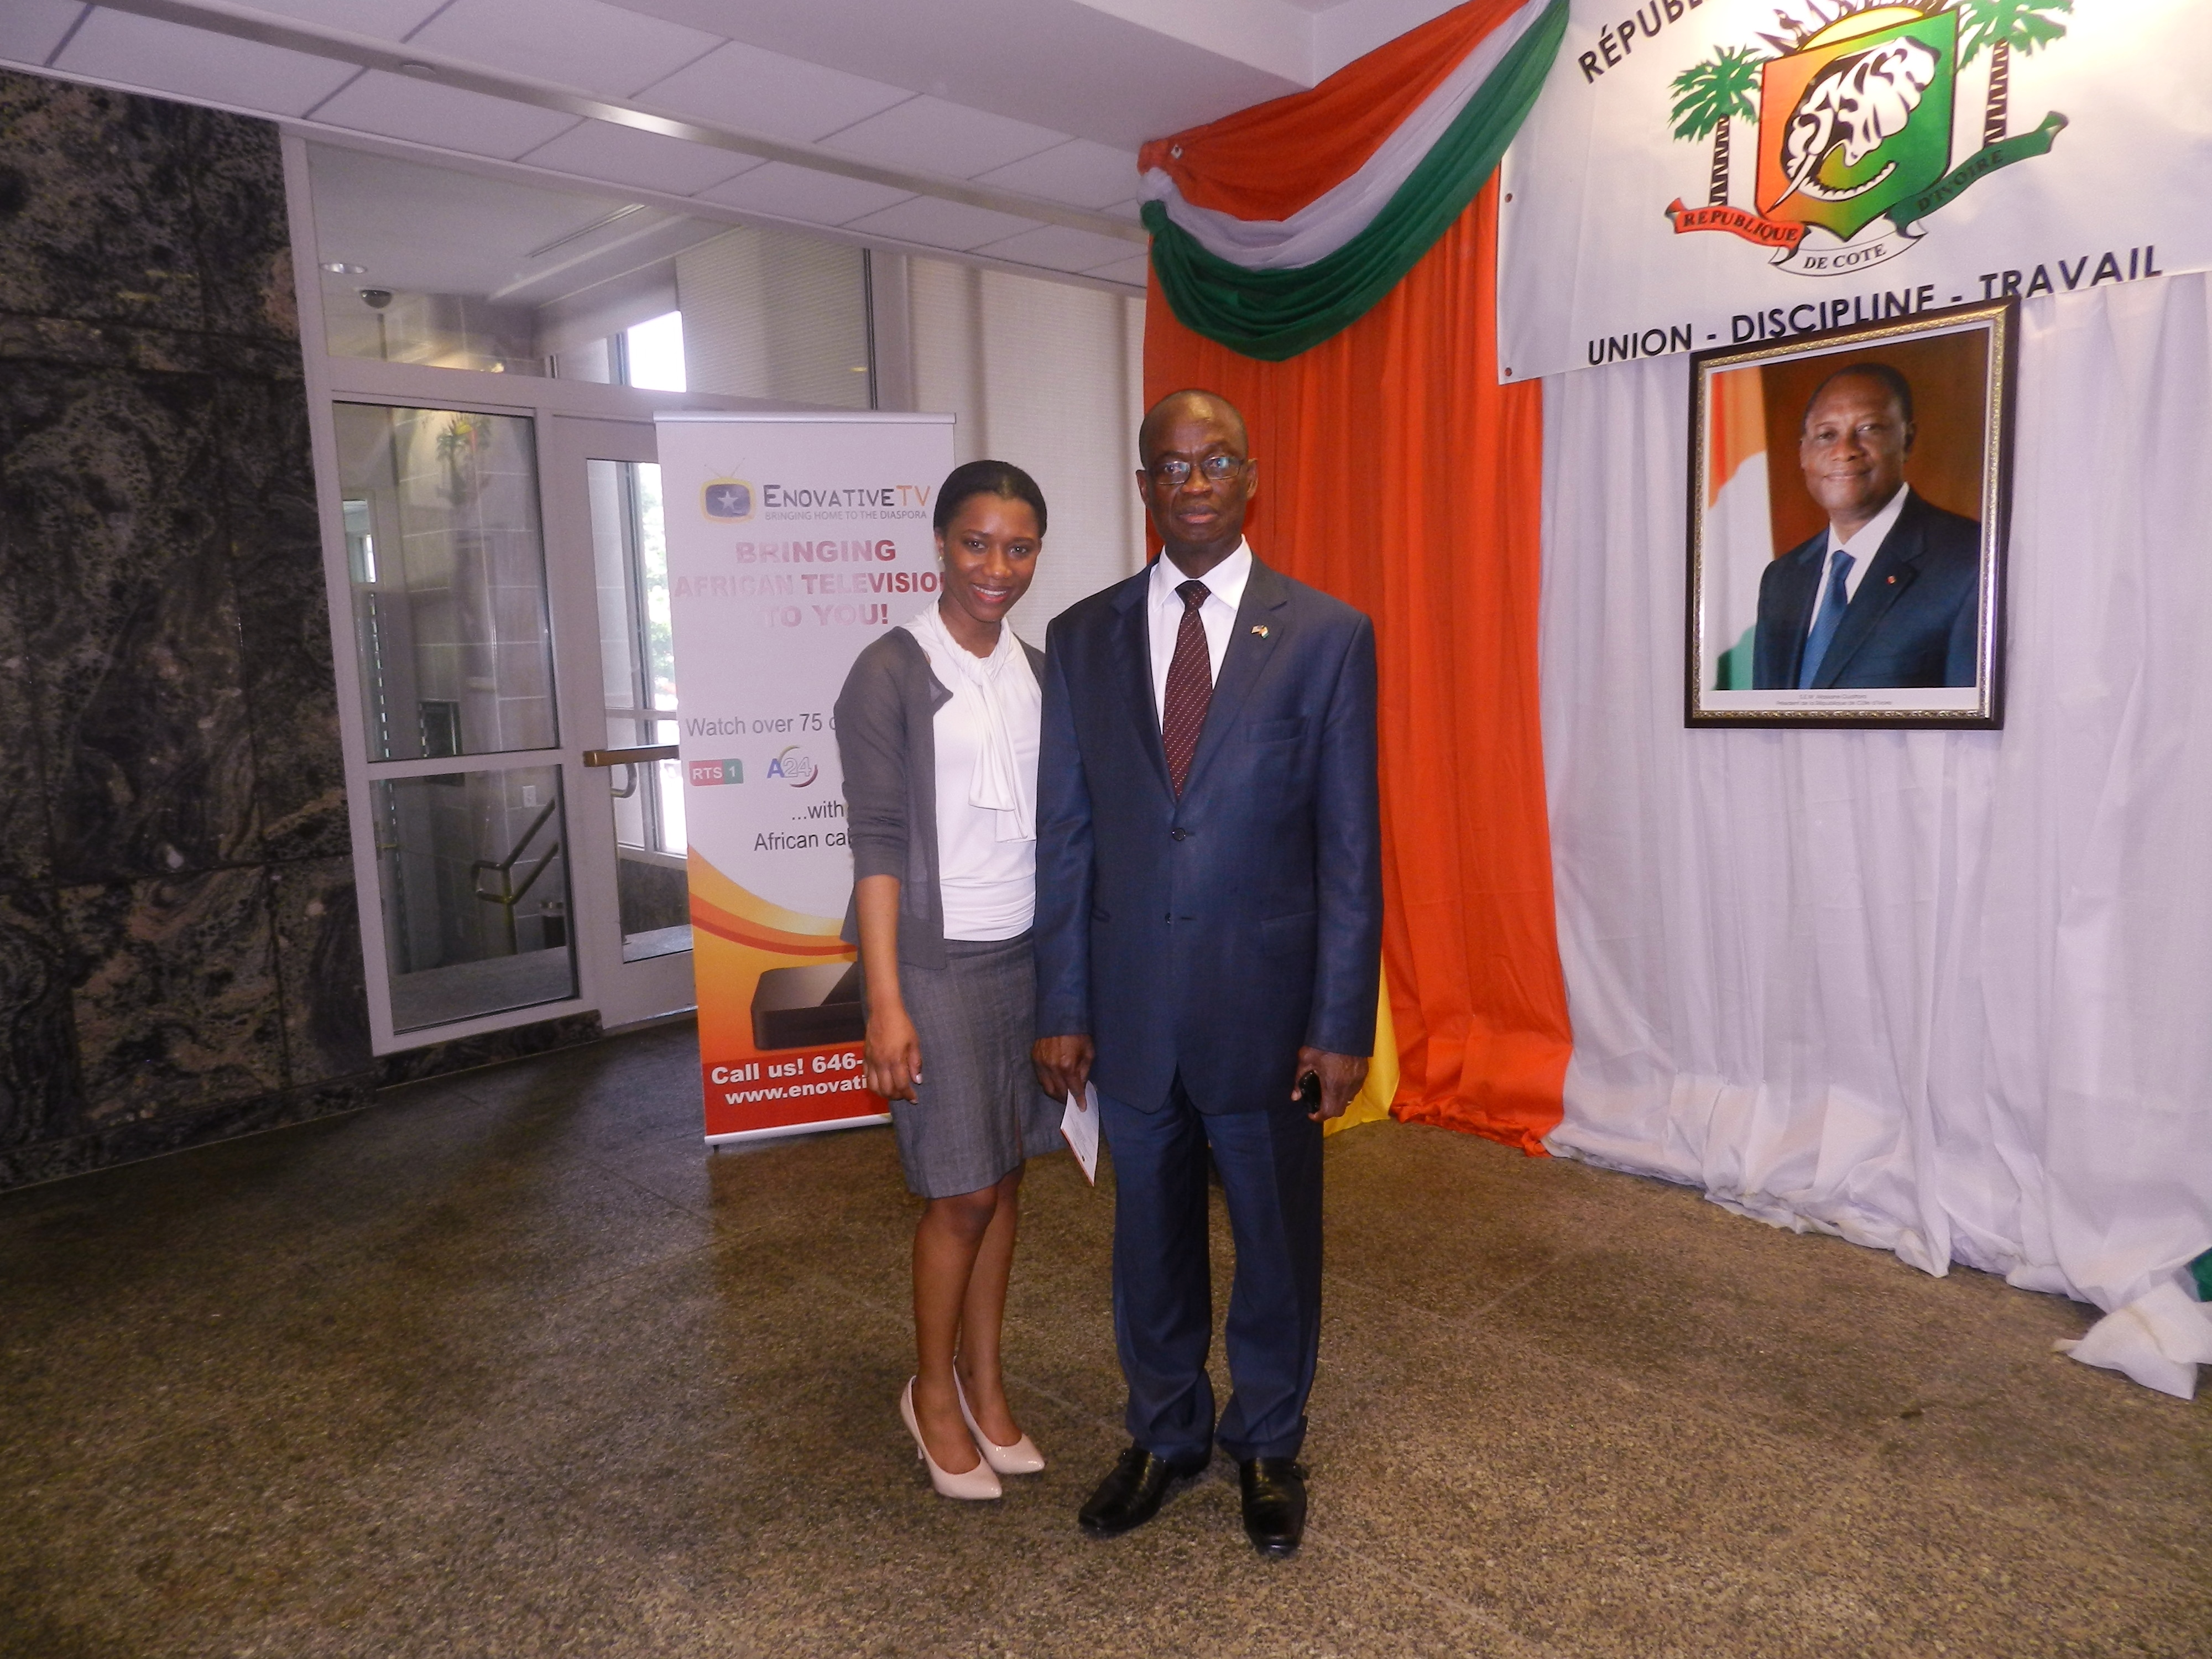  La chaîne Enovative TV noue un partenariat avec l'ambassade de Côte d'Ivoire aux USA